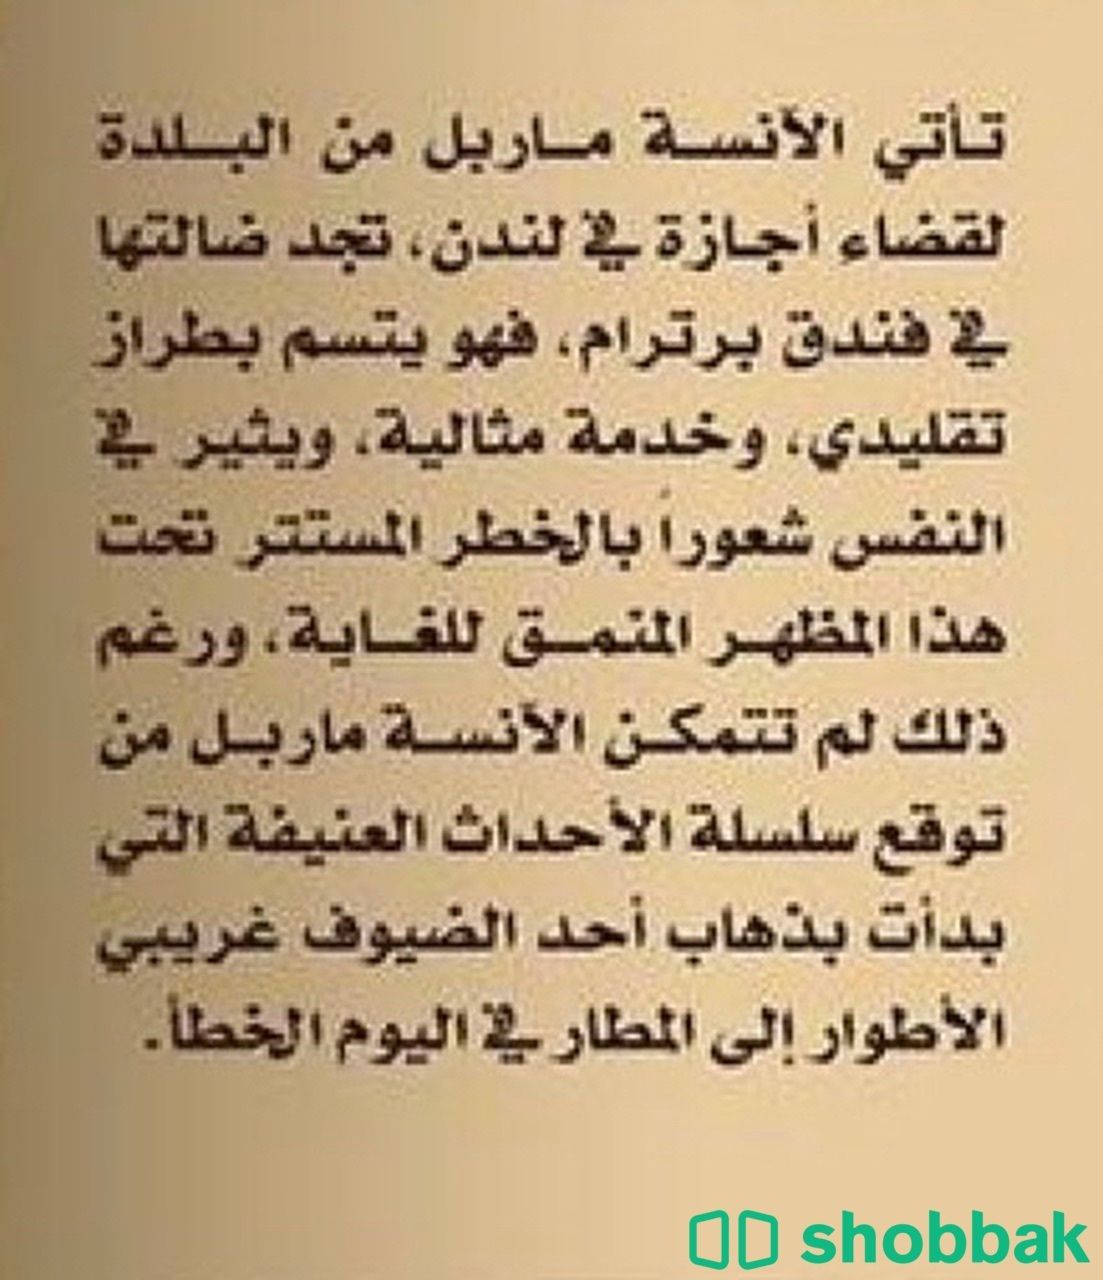 كتاب لغز فندق برترام للكاتبة اجاثا كريستي شباك السعودية